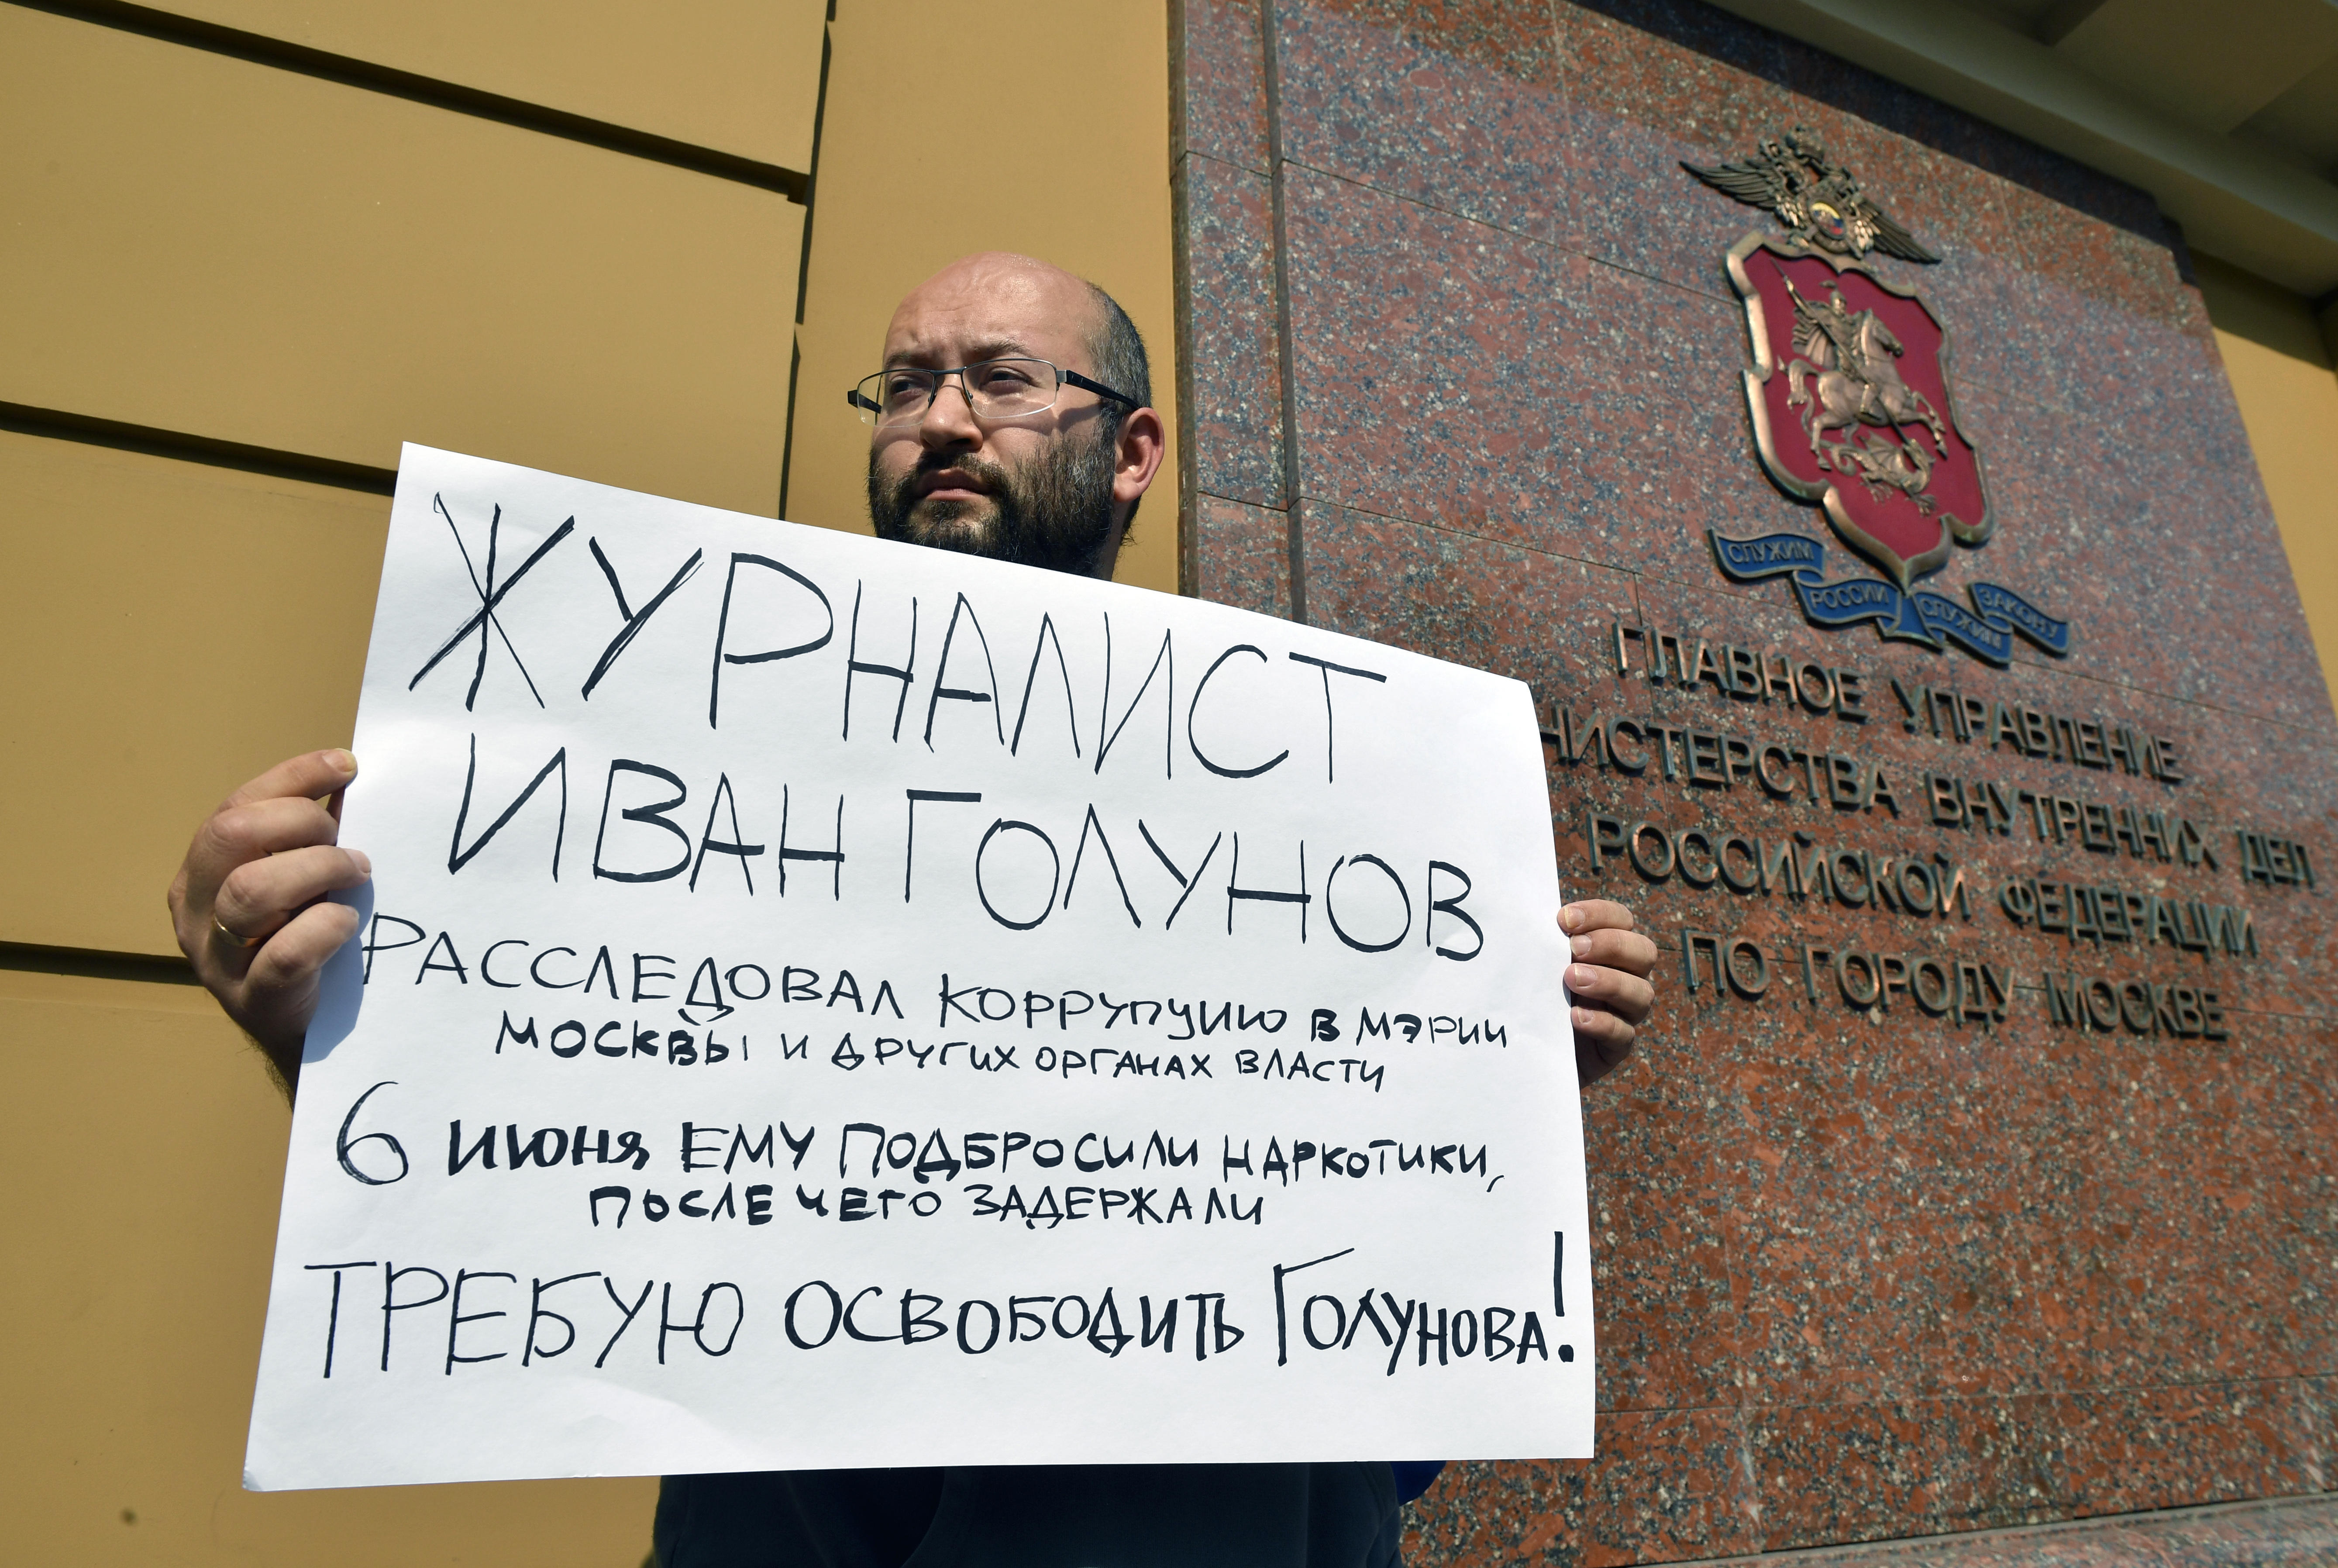 Ilja Azar egyedül tart fel egy táblát medúzás kollégája, Ivan Golunov melletti kiállásként június 7-én